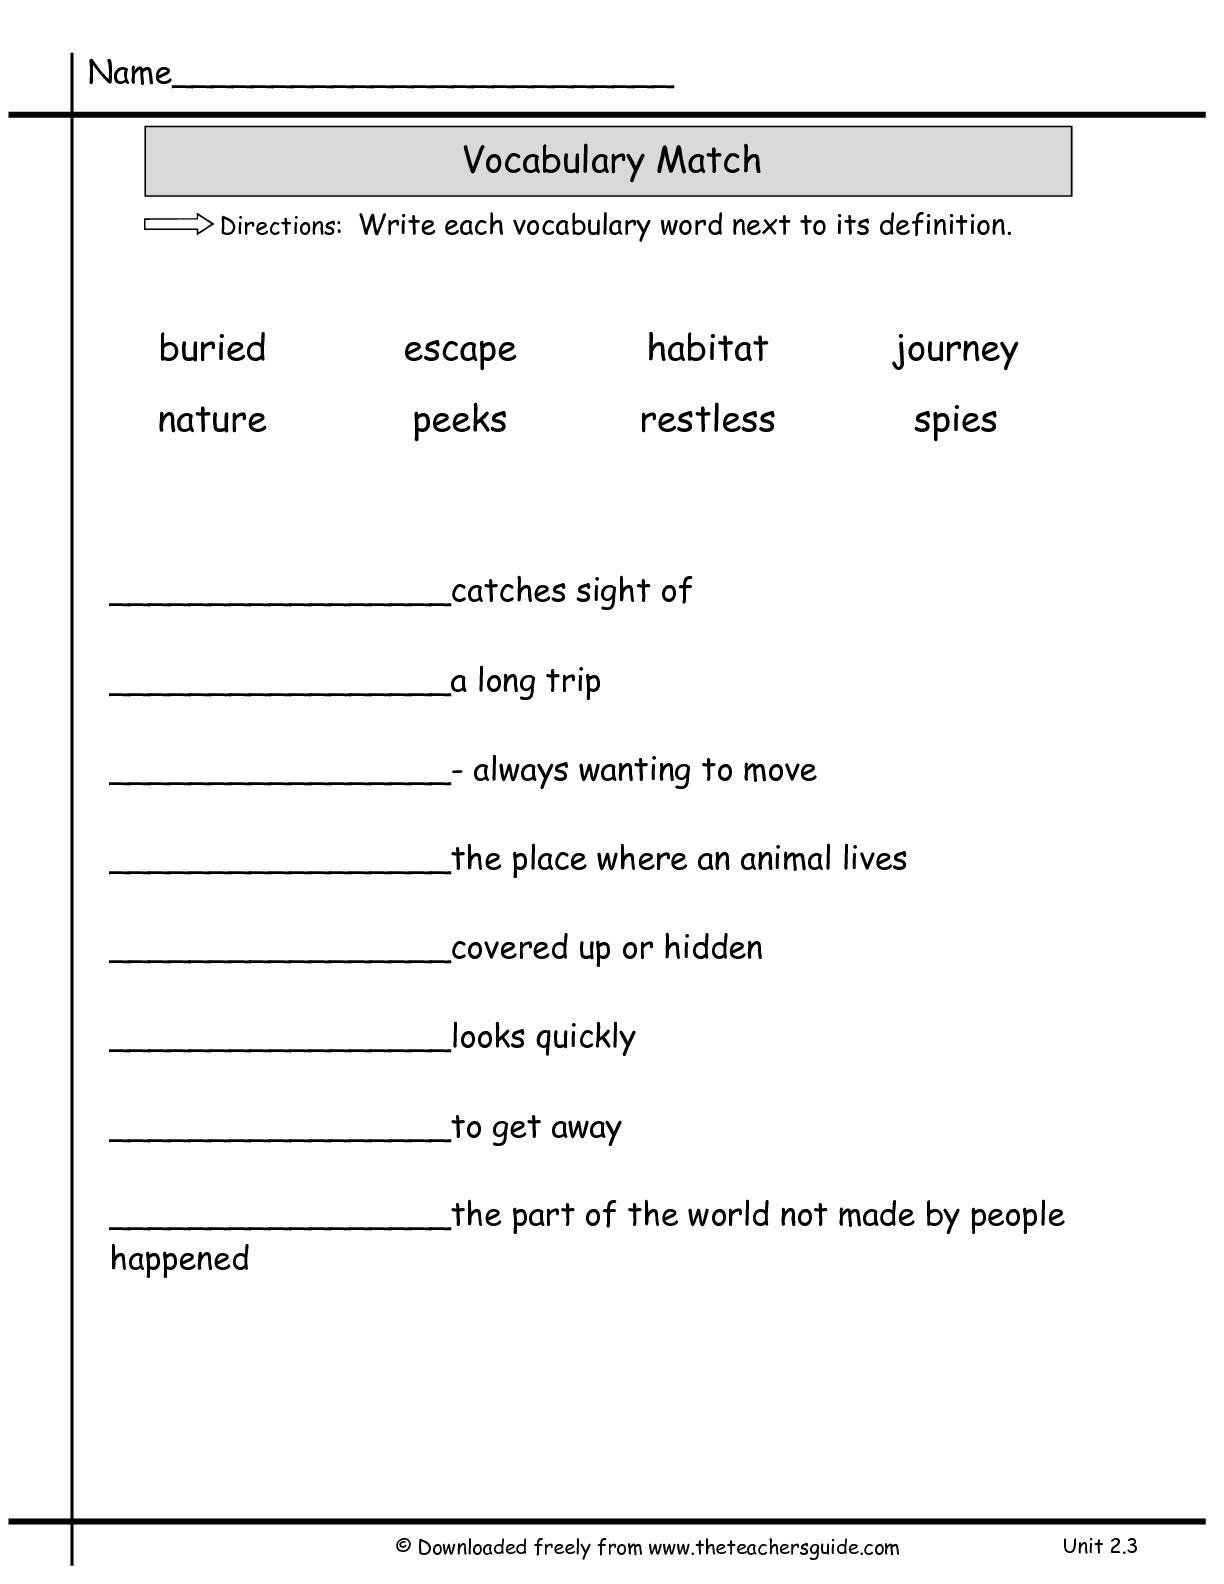 15-word-definition-worksheets-worksheeto